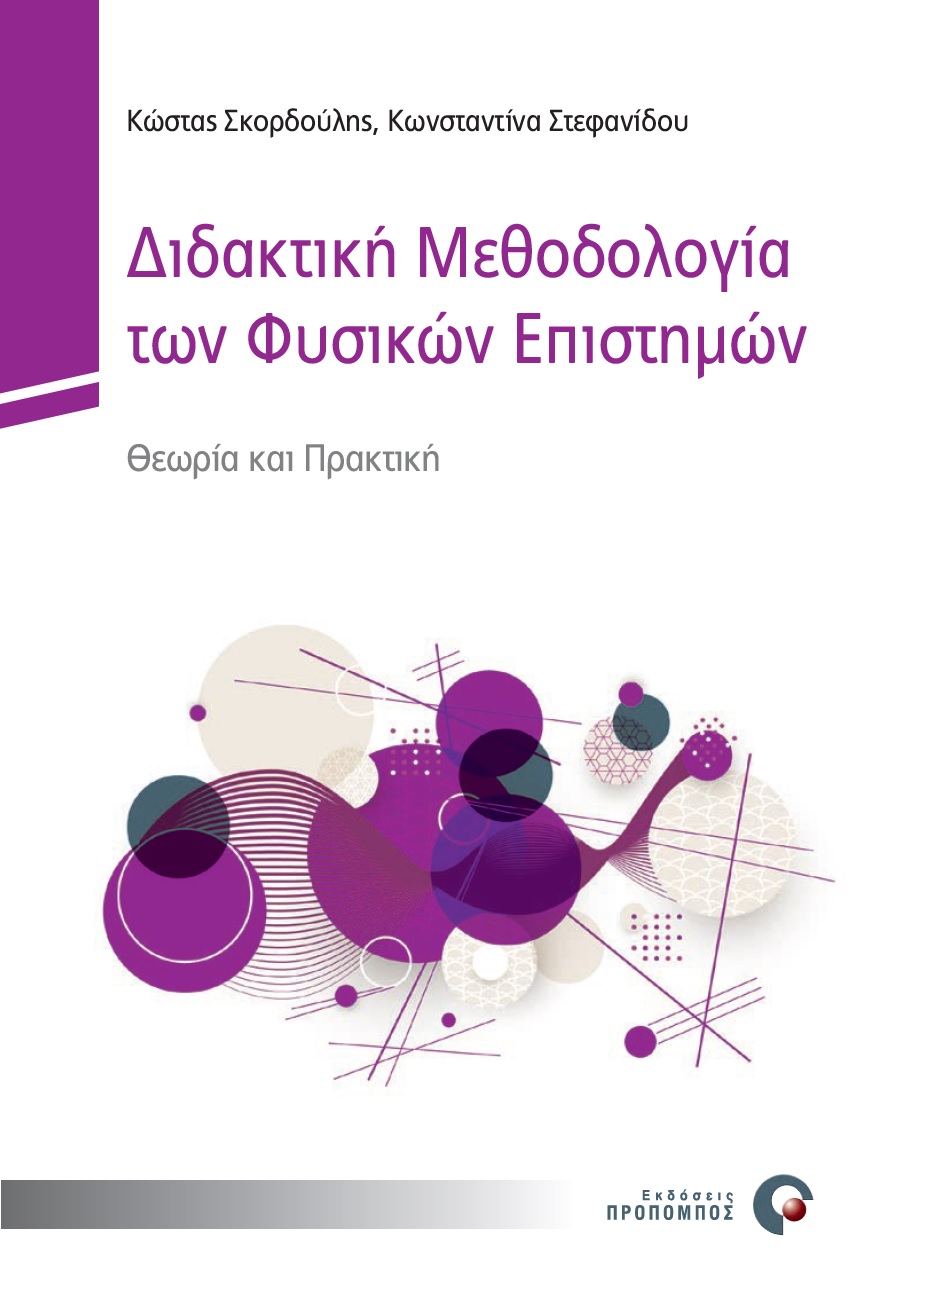 didaktiki_methodologia_cover